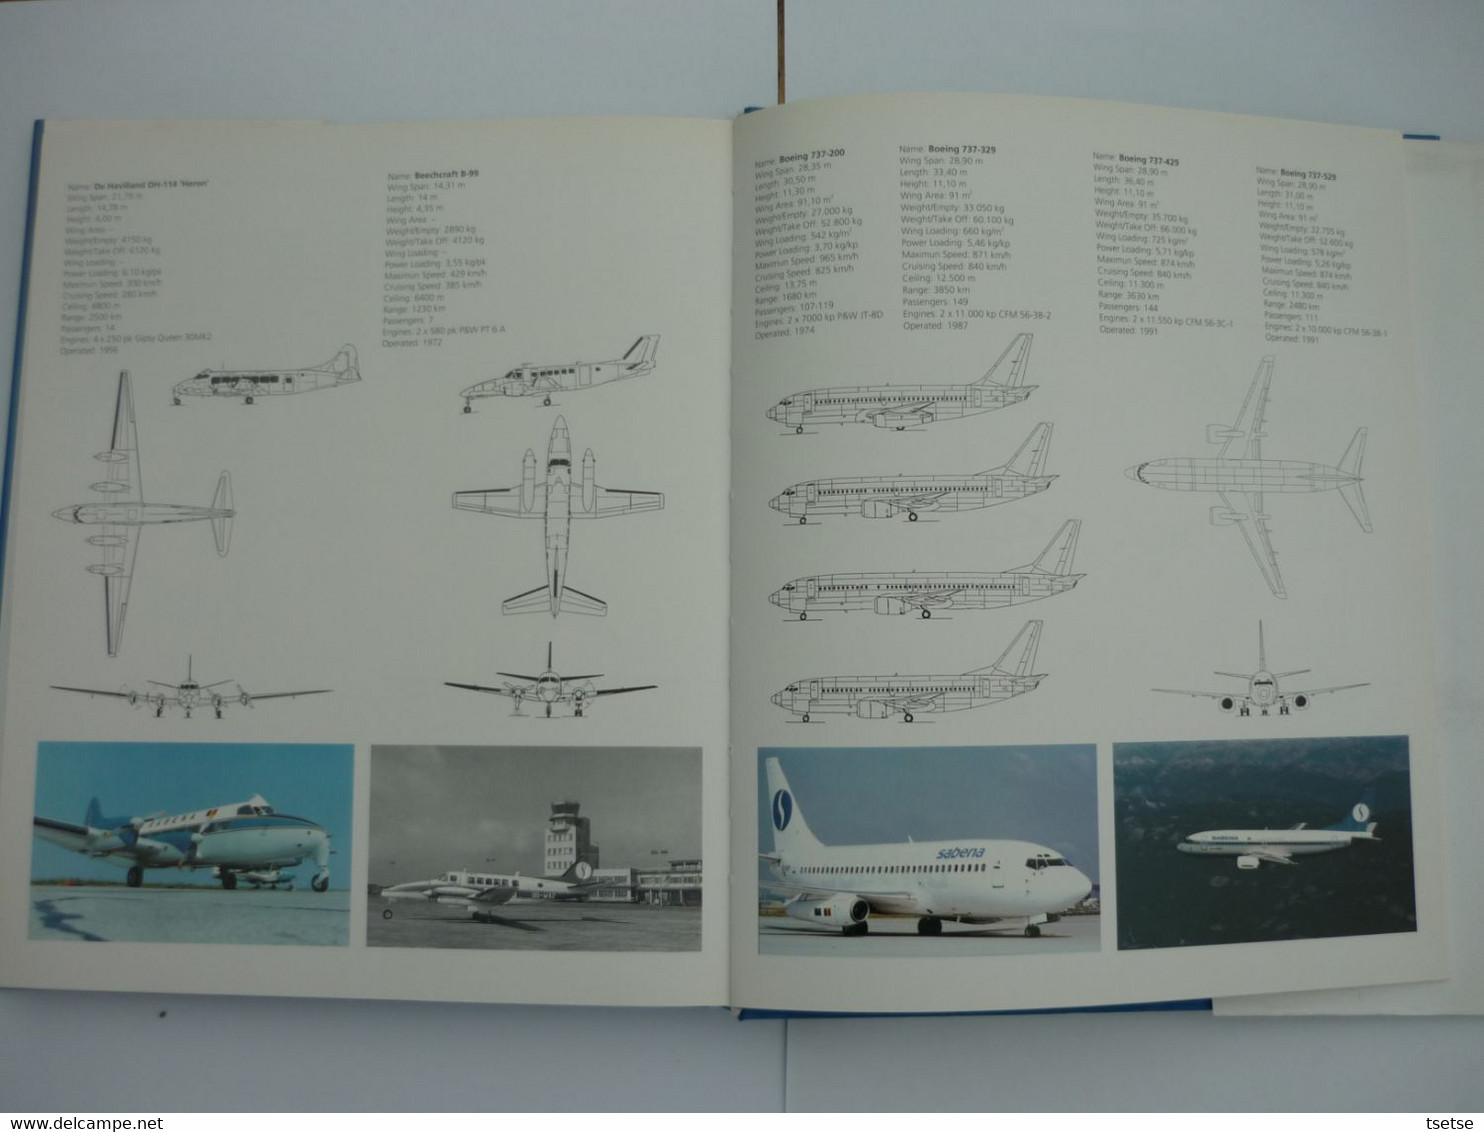 SABENA - 70 Jaar Luchtvaartpionier -1993 - Uitgeverij Lannoo/ Tielt - Publicidad